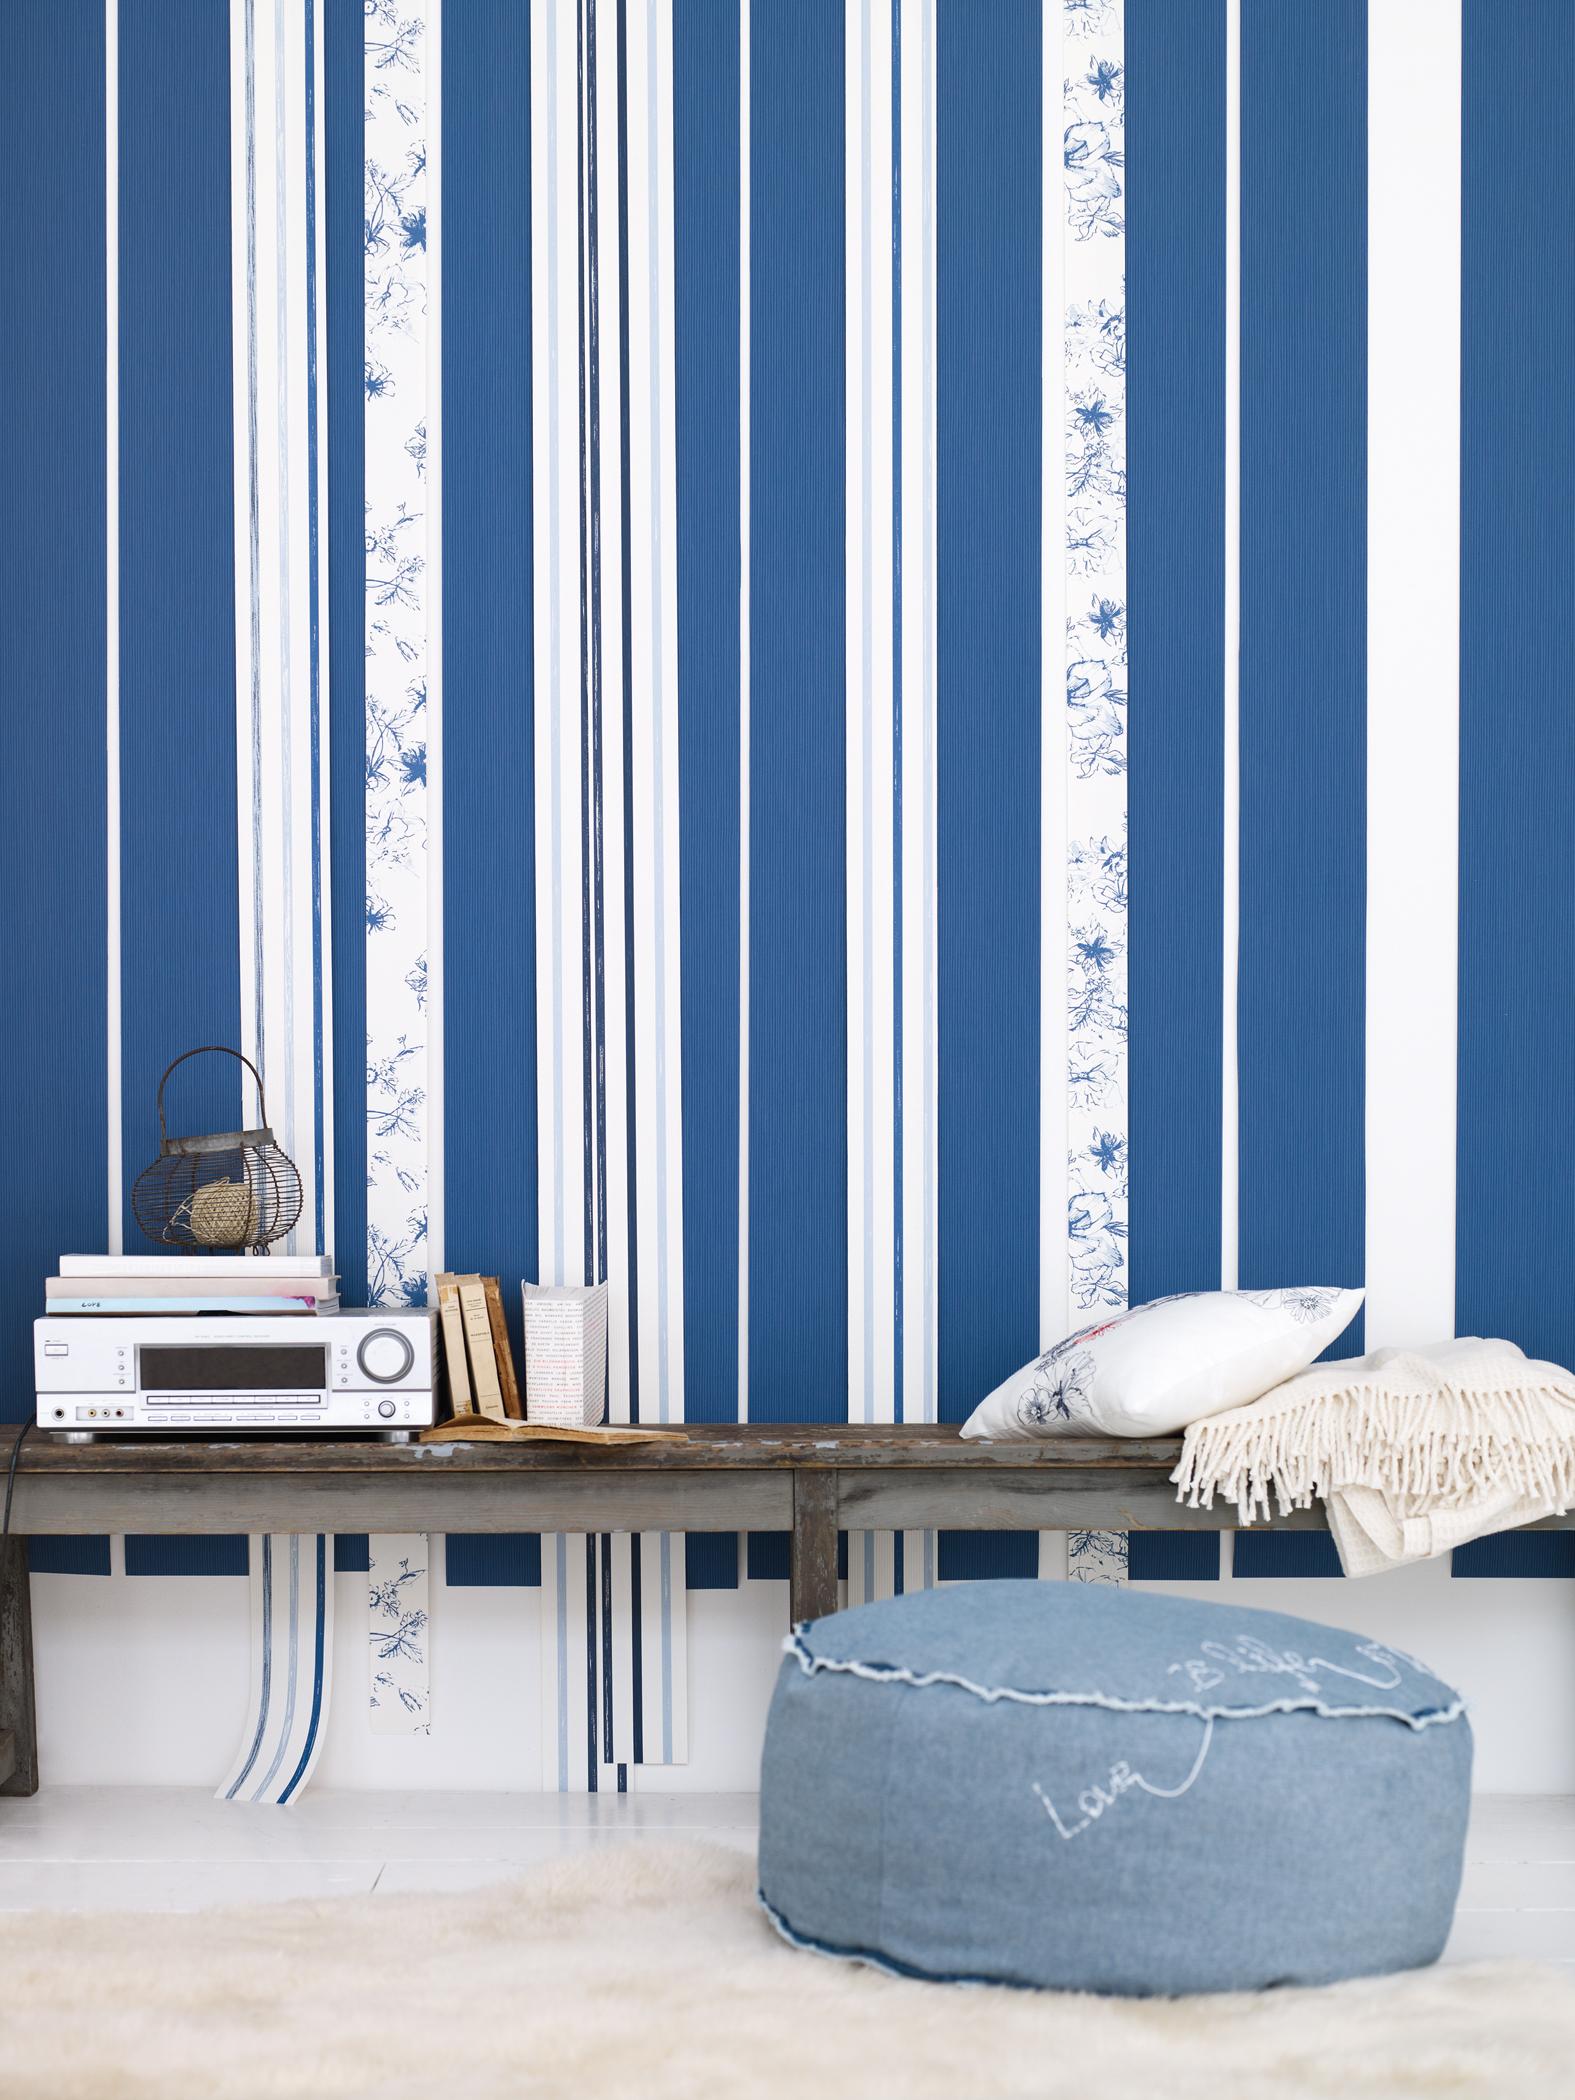 DIY-Wandgestaltung aus verschiedenen Tapeten #sitzbank #mustertapete #blauewandgestaltung #designwand ©Esprit Home